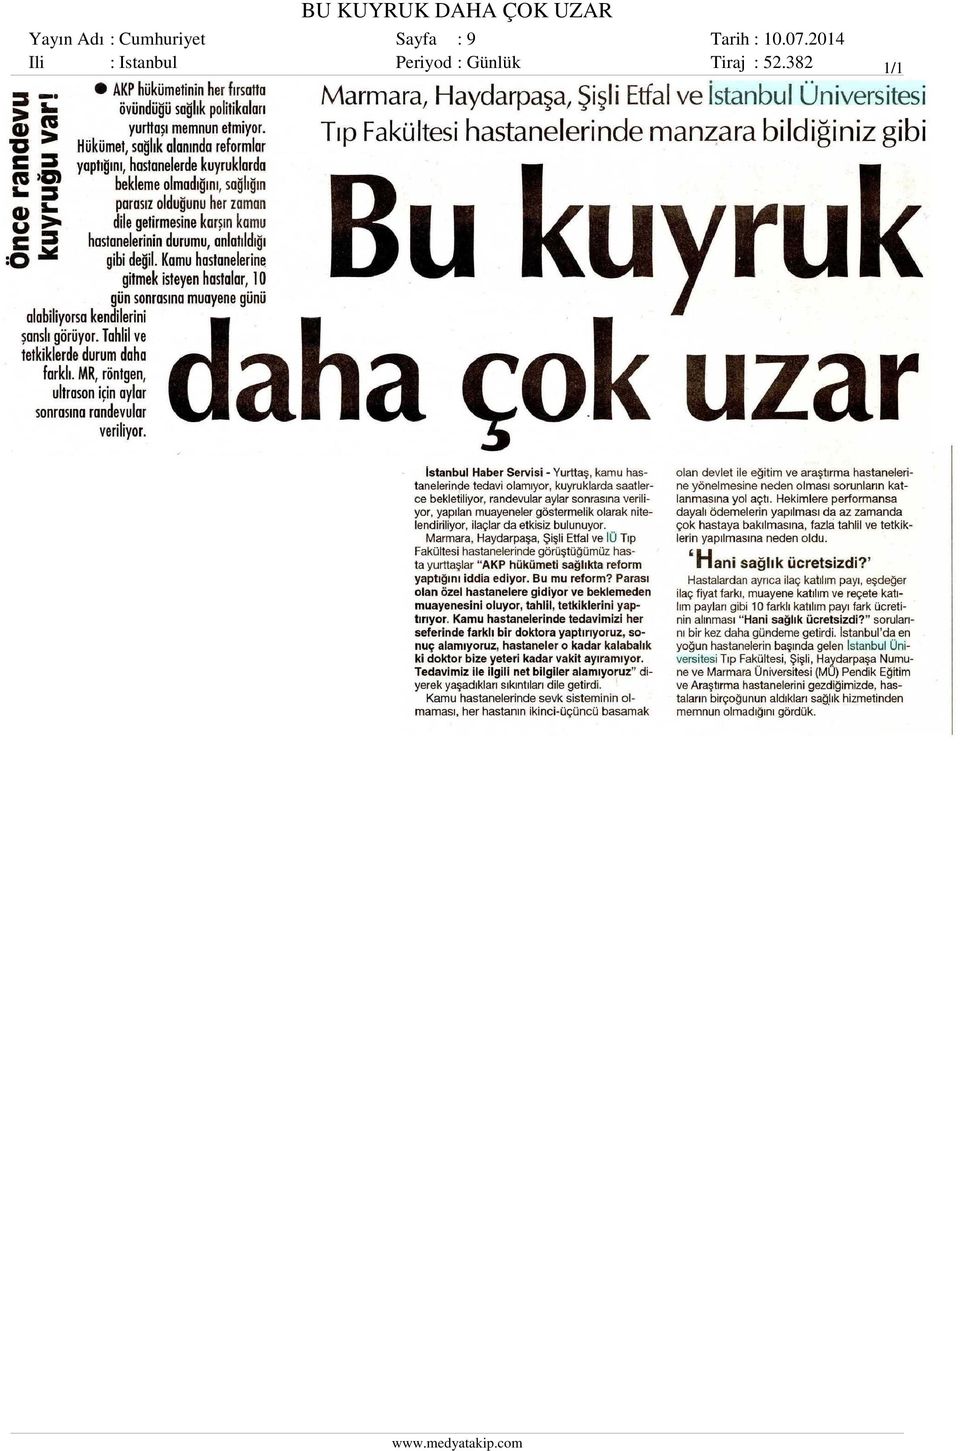 Sayfa : 9 Ili : Istanbul